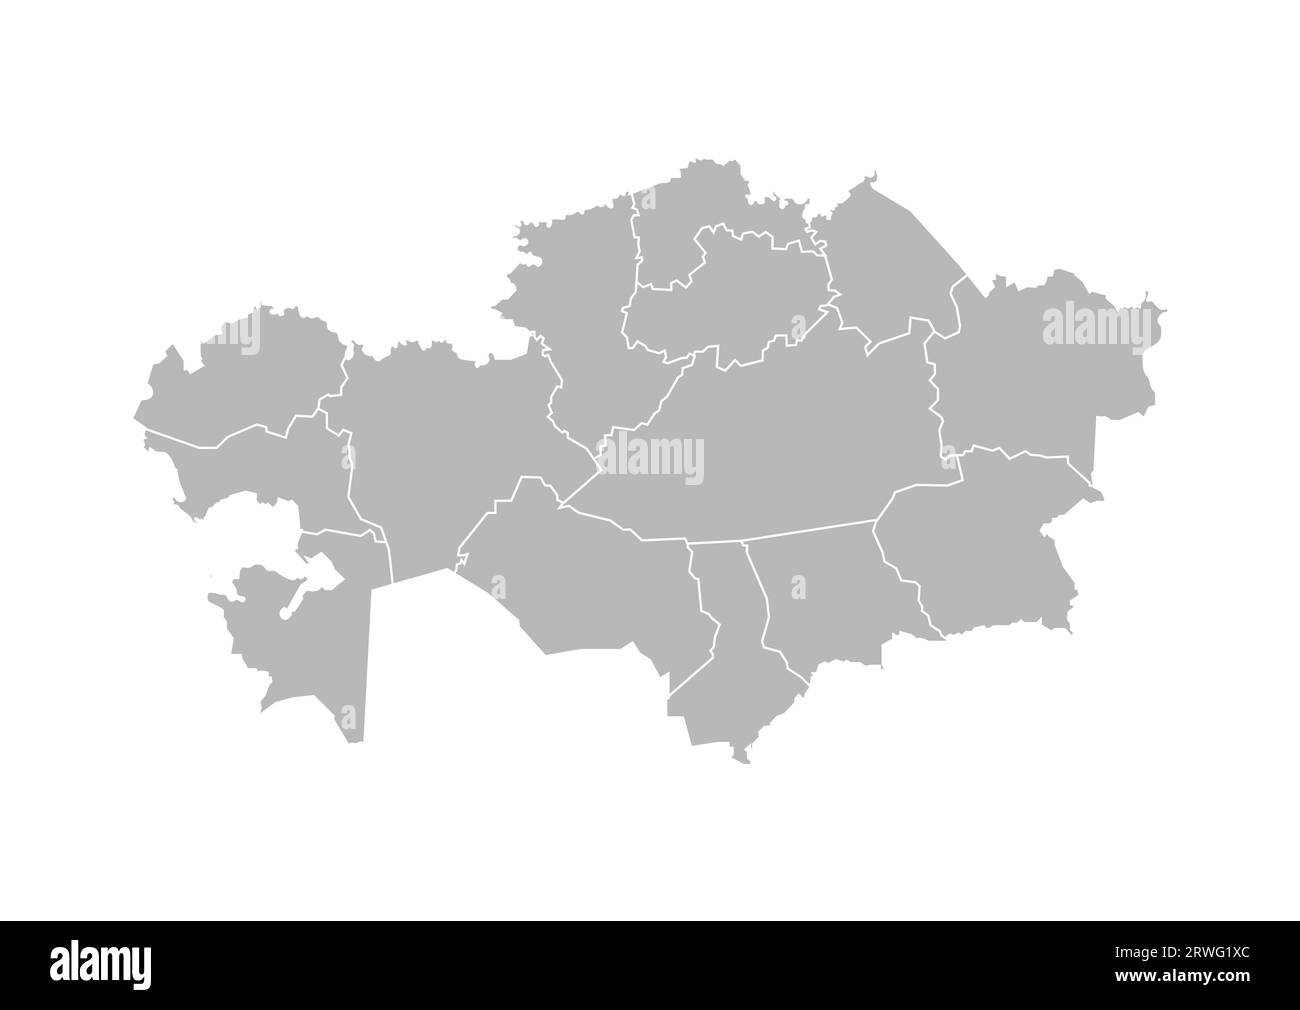 Illustrazione vettoriale isolata della mappa amministrativa semplificata del Kazakistan. Confini delle province (regioni). Silhouette grigie. Contorno bianco. Illustrazione Vettoriale